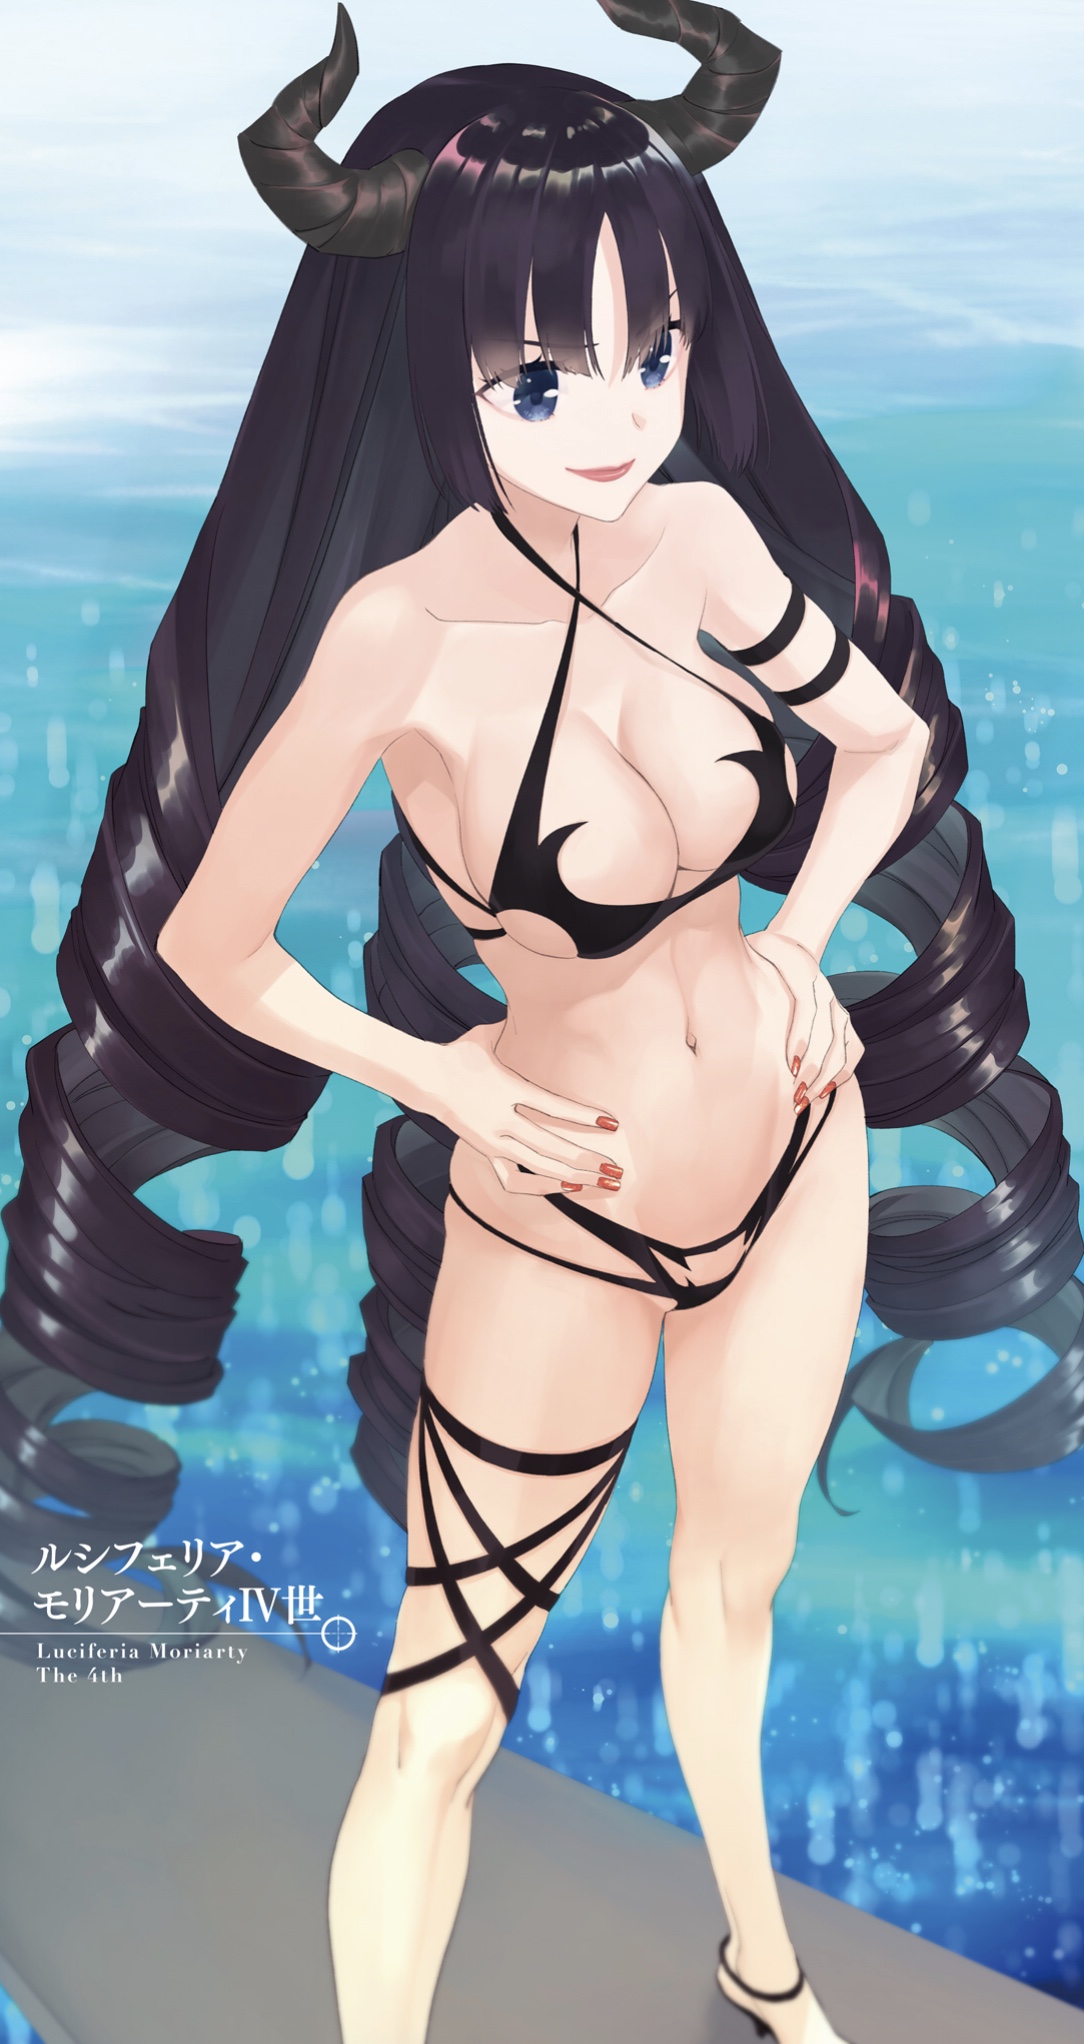 Bikini moriarty Swimming Suit